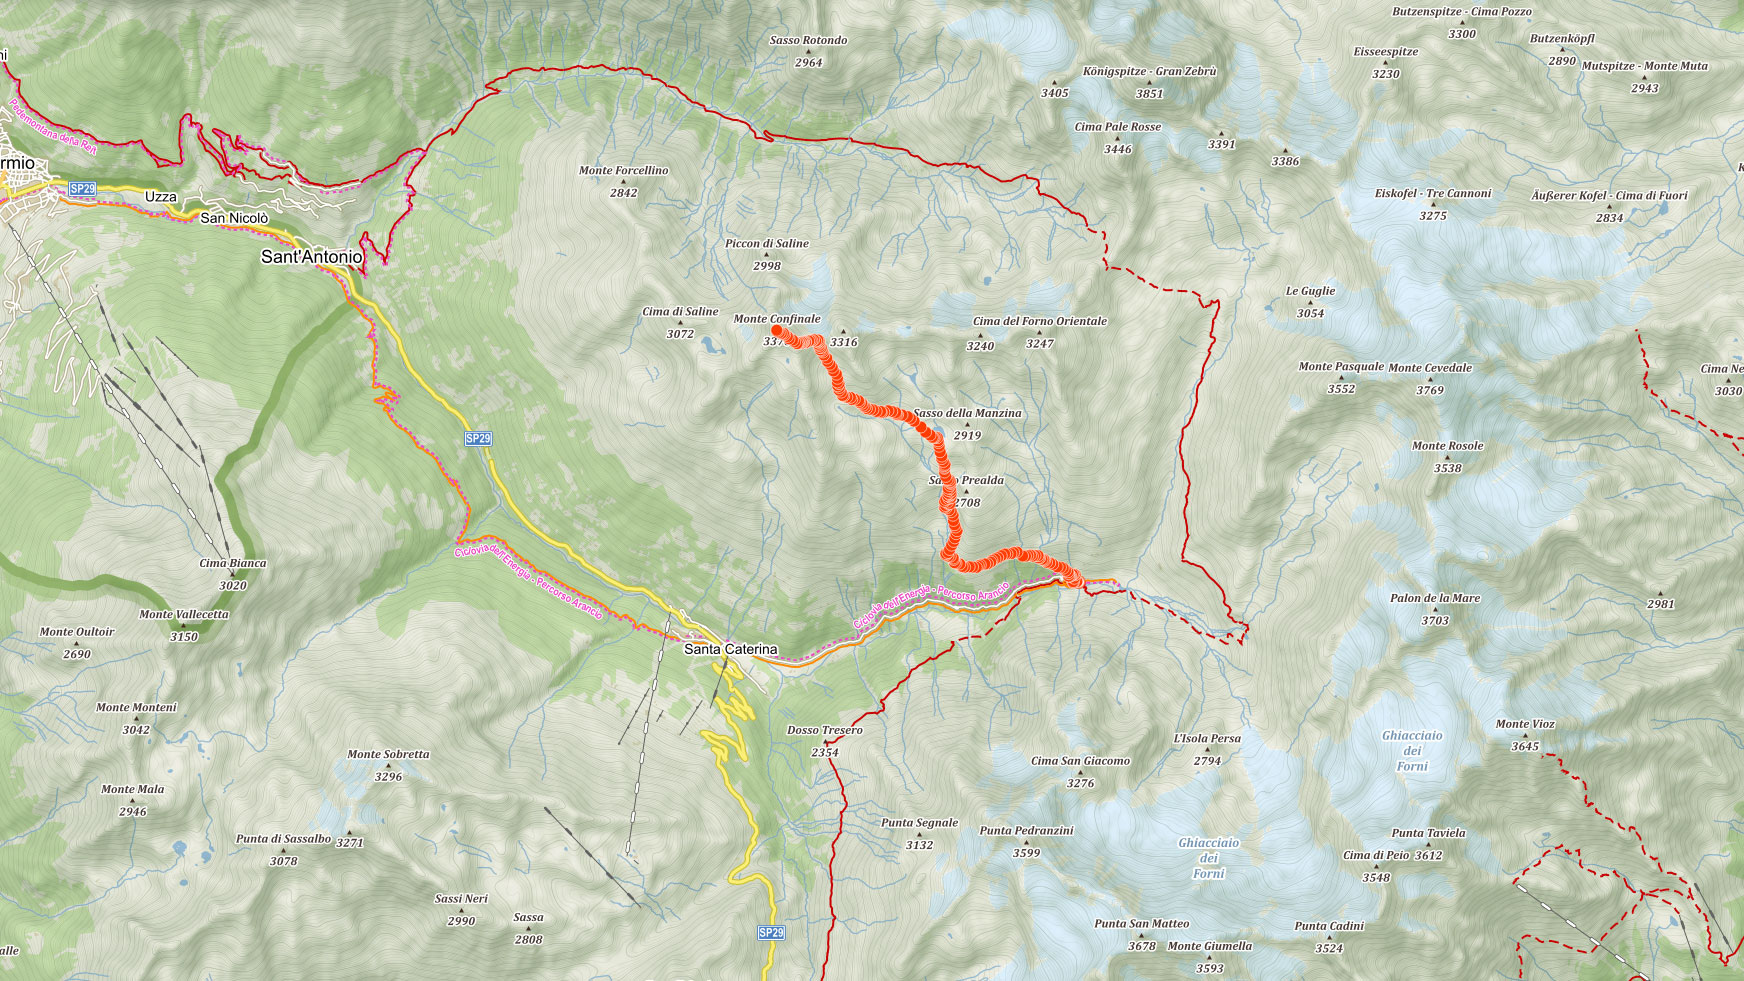 Mapa výstupu na Monte Confinale v Ortles v italských Alpách